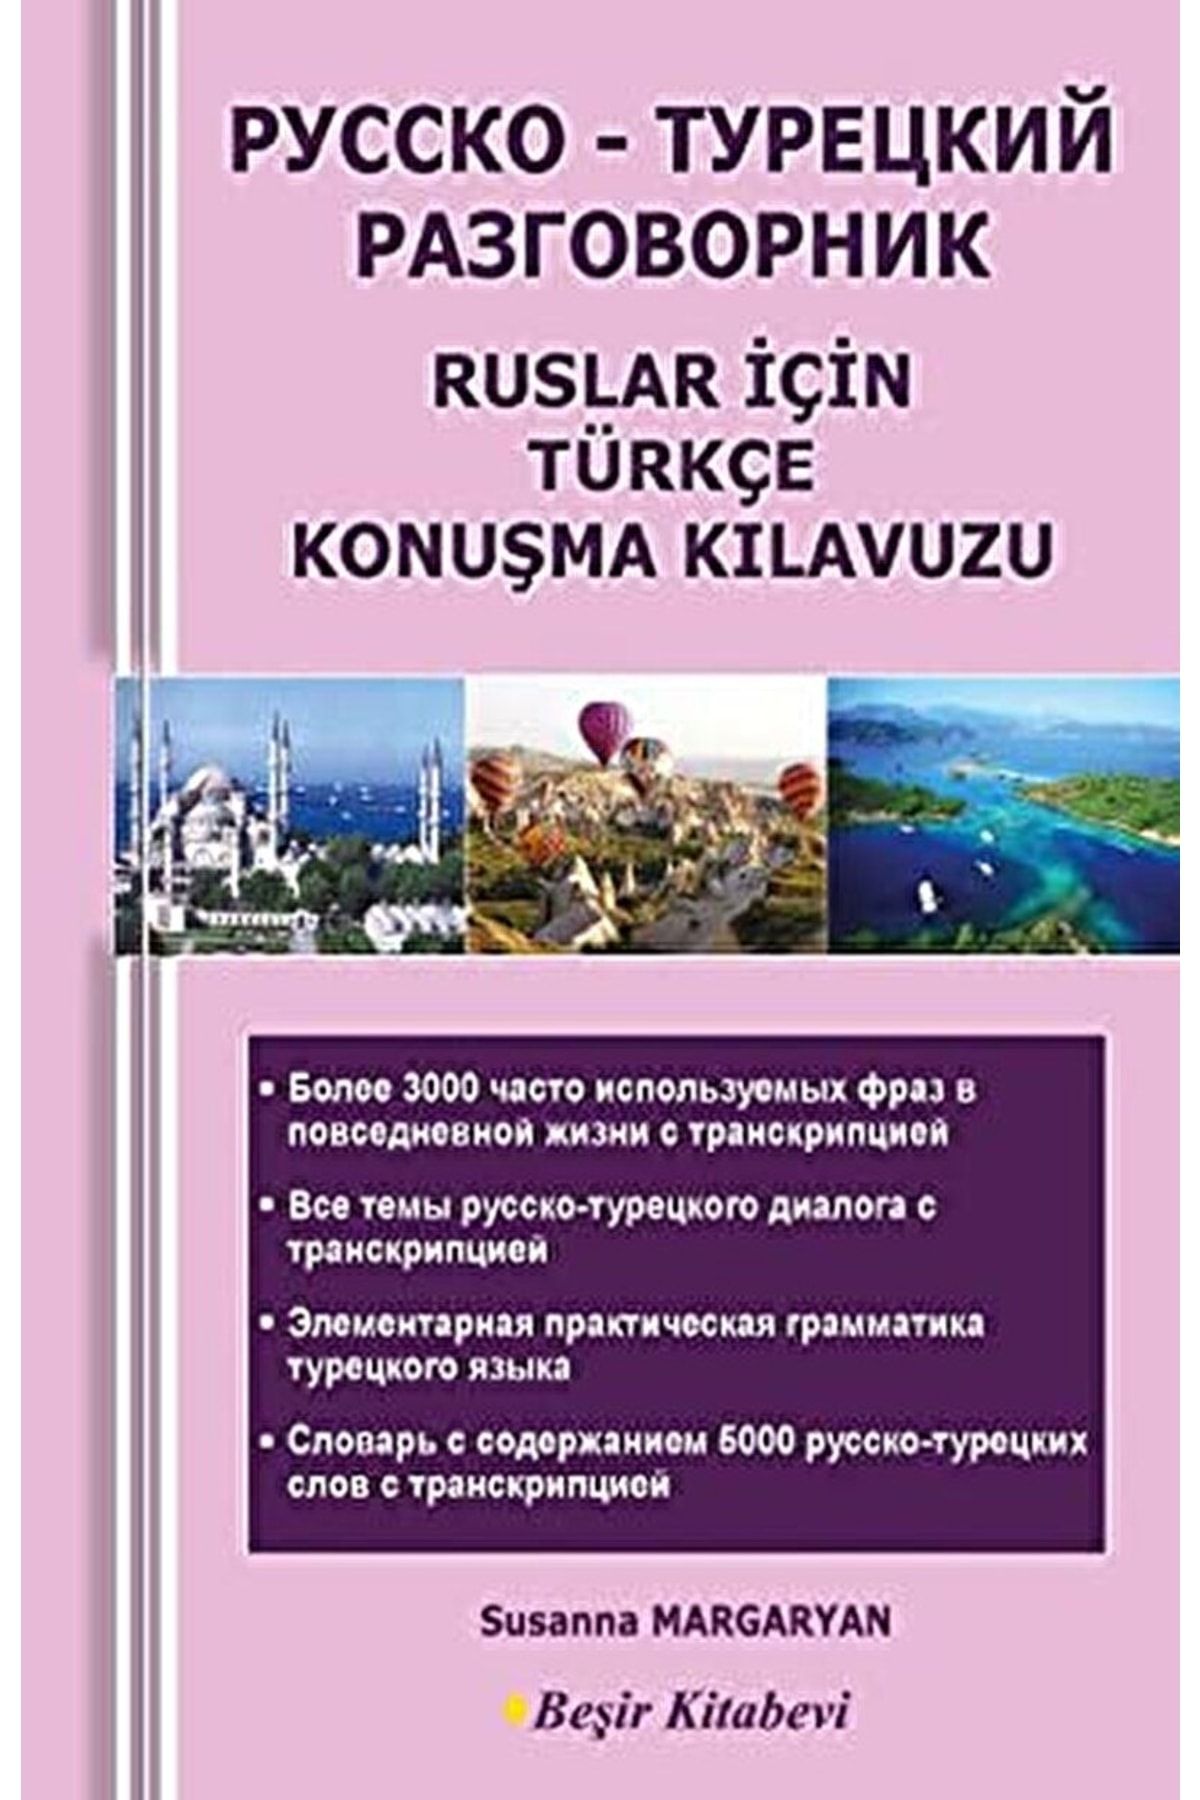 Beşir Kitabevi Ruslar Için Türkçe Konuşma Kılavuzu / Susanna Margaryan / / 9786055910945